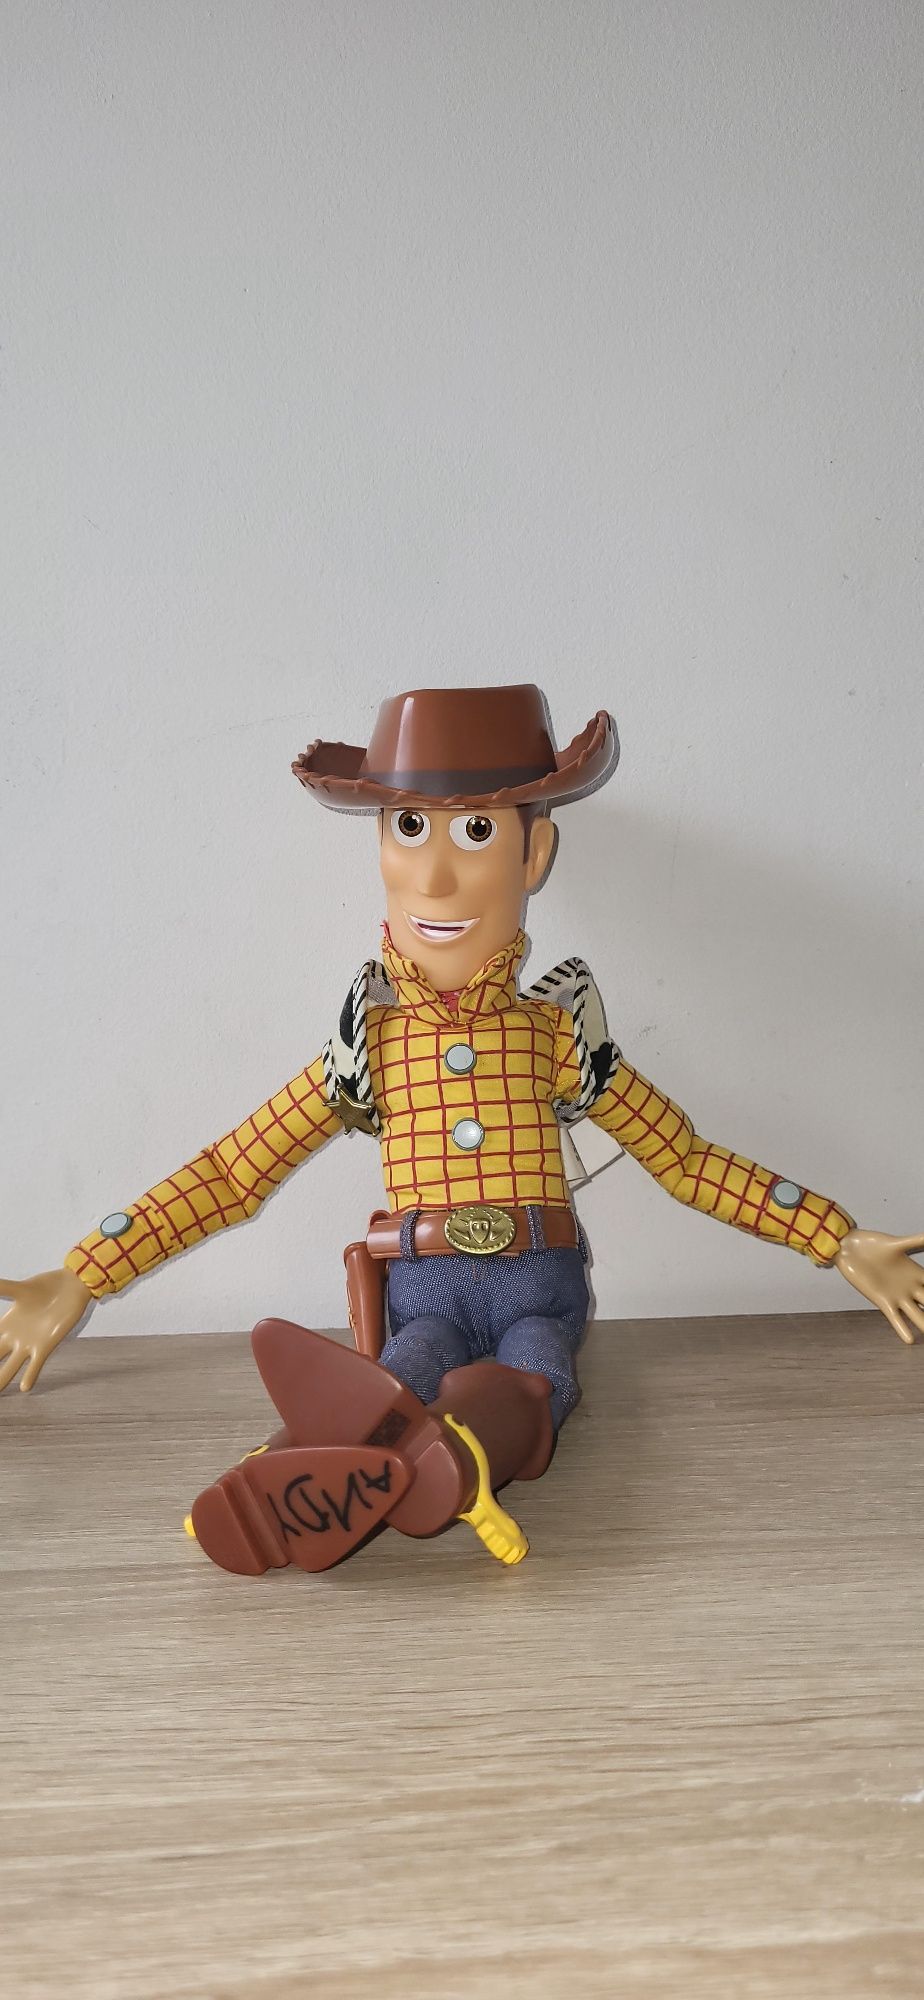 Figurka z Toy Story ,,Chudy" 40cm